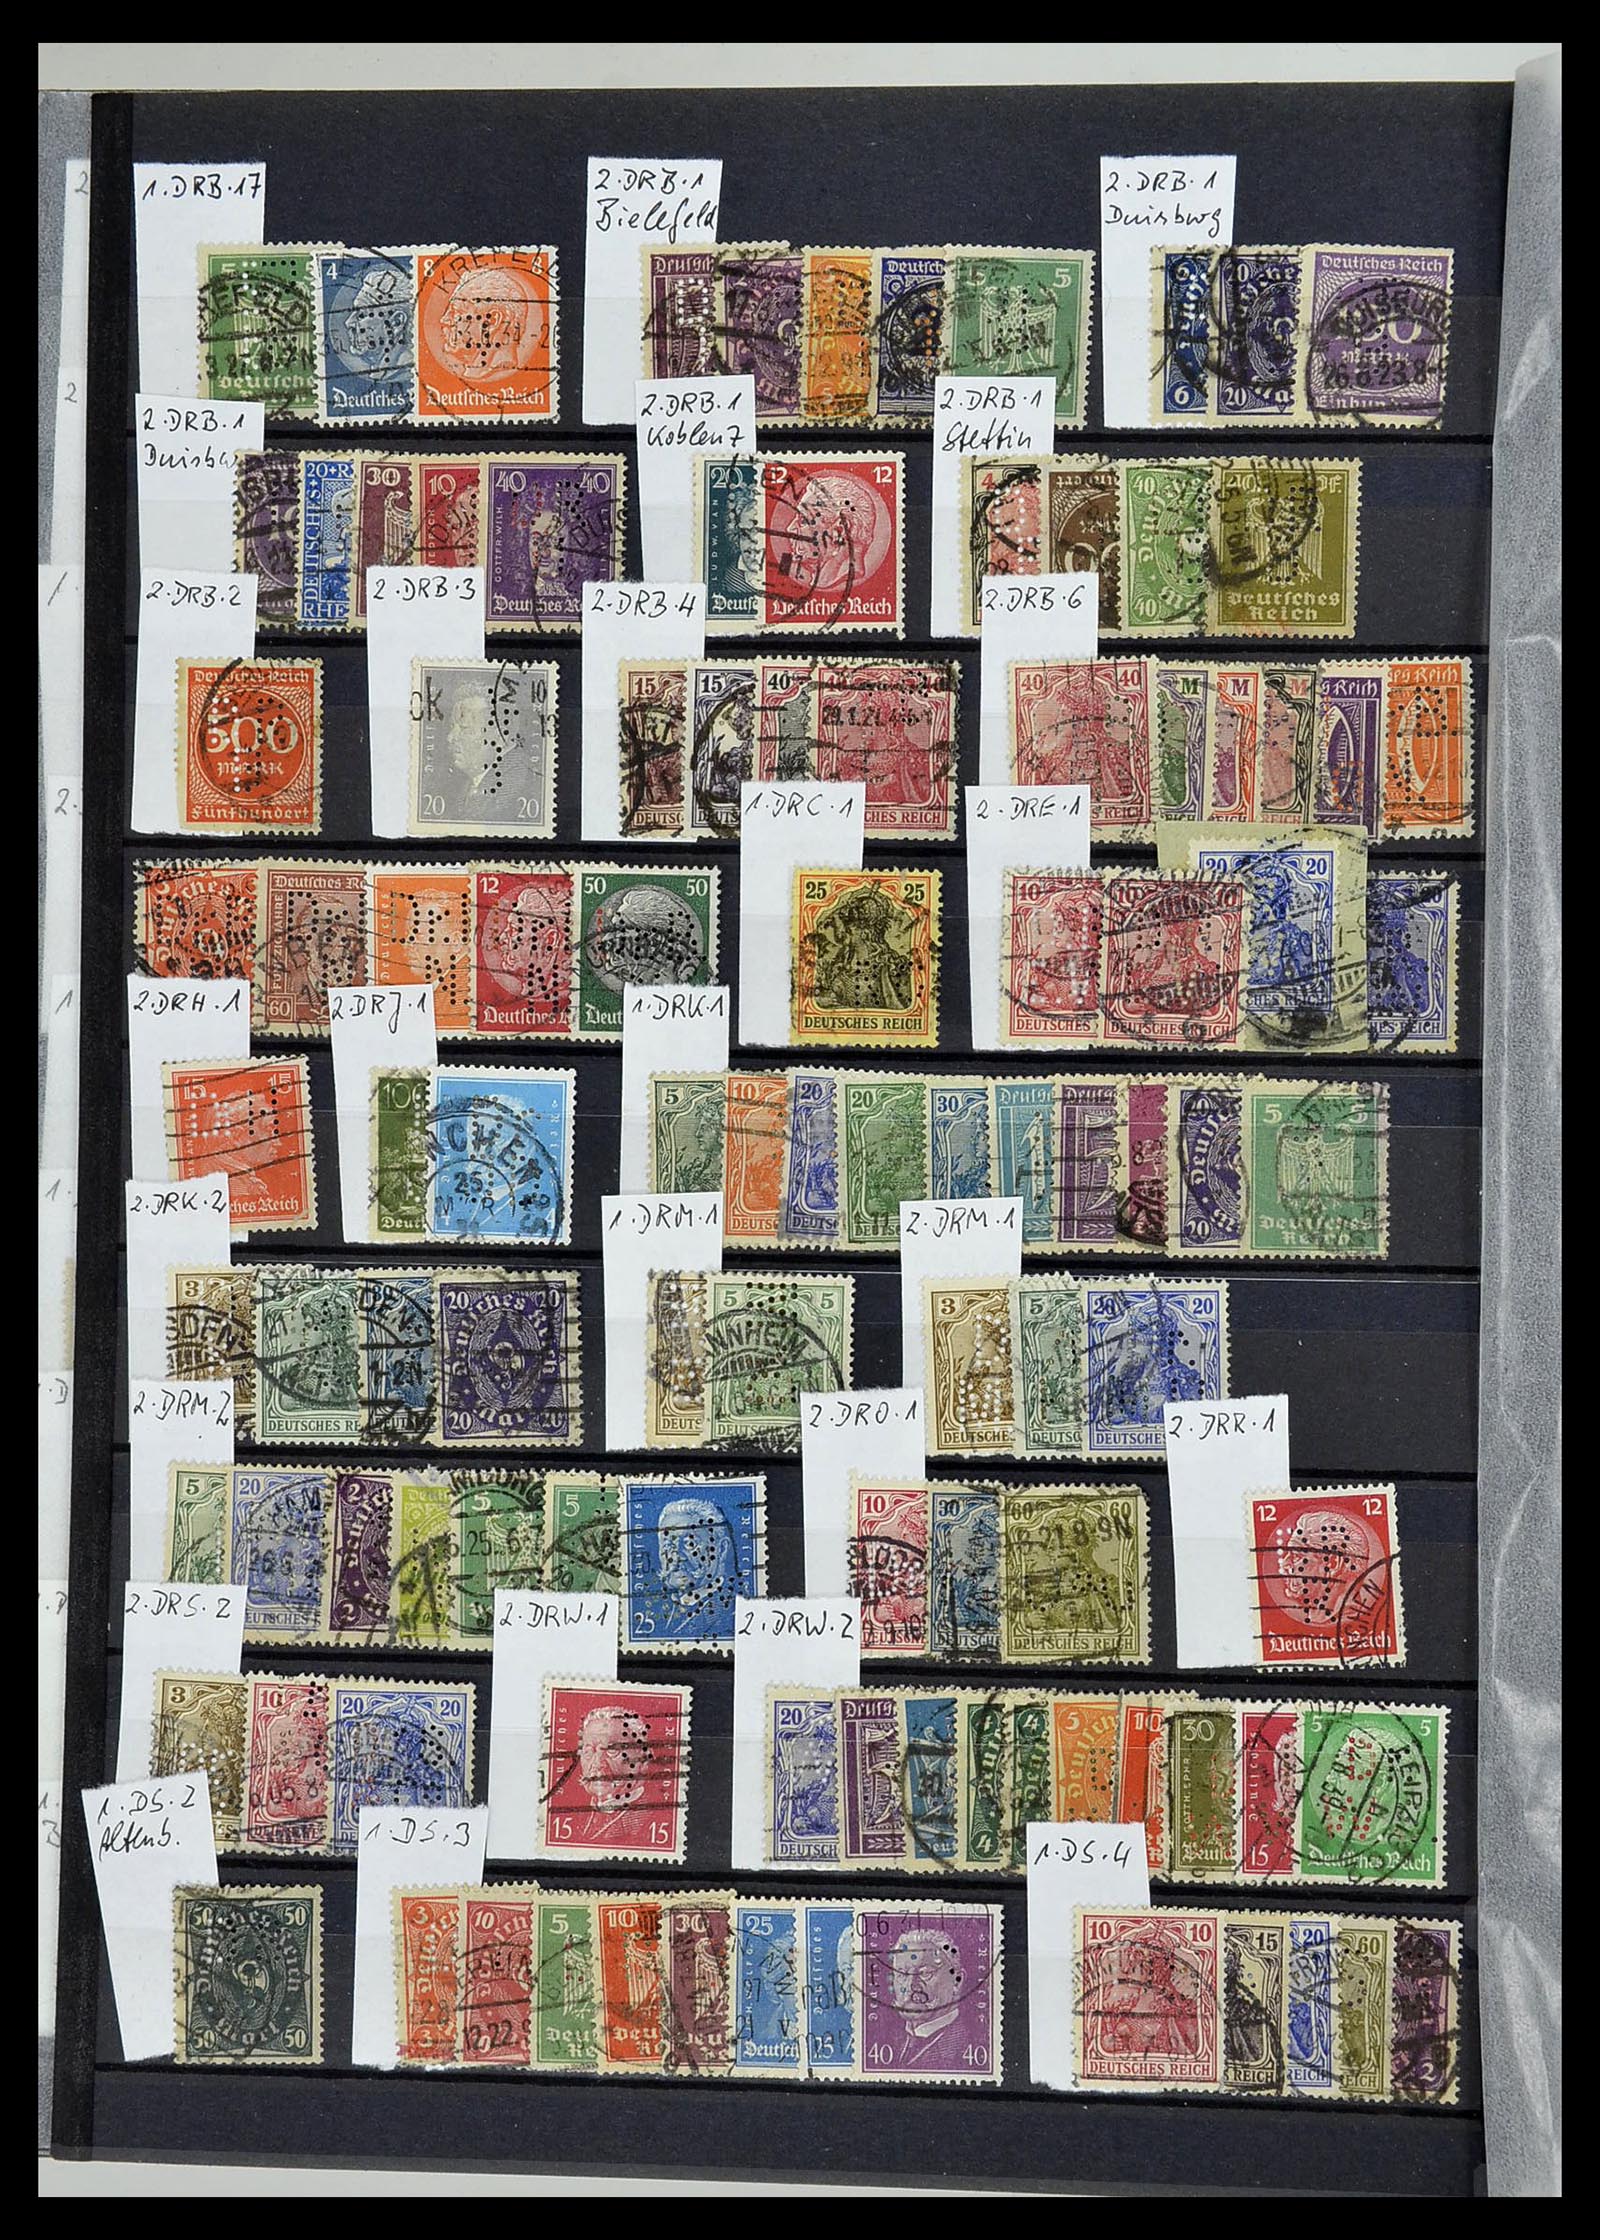 34432 103 - Stamp Collection 34432 German Reich perfins 1900-1933.